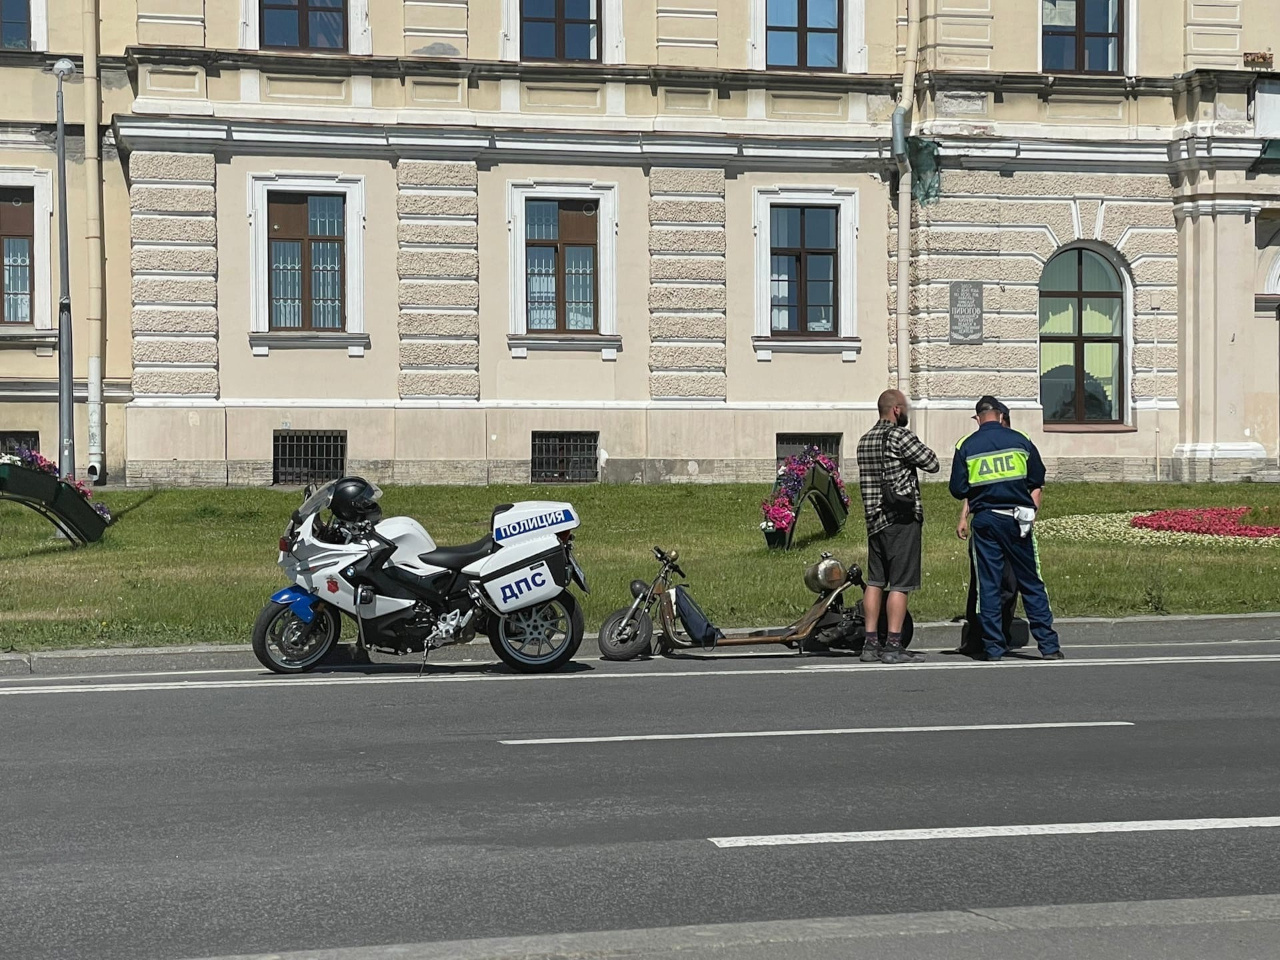 Необычное транспортное средство удивило мотополицию на Пироговской набережной в Петербурге